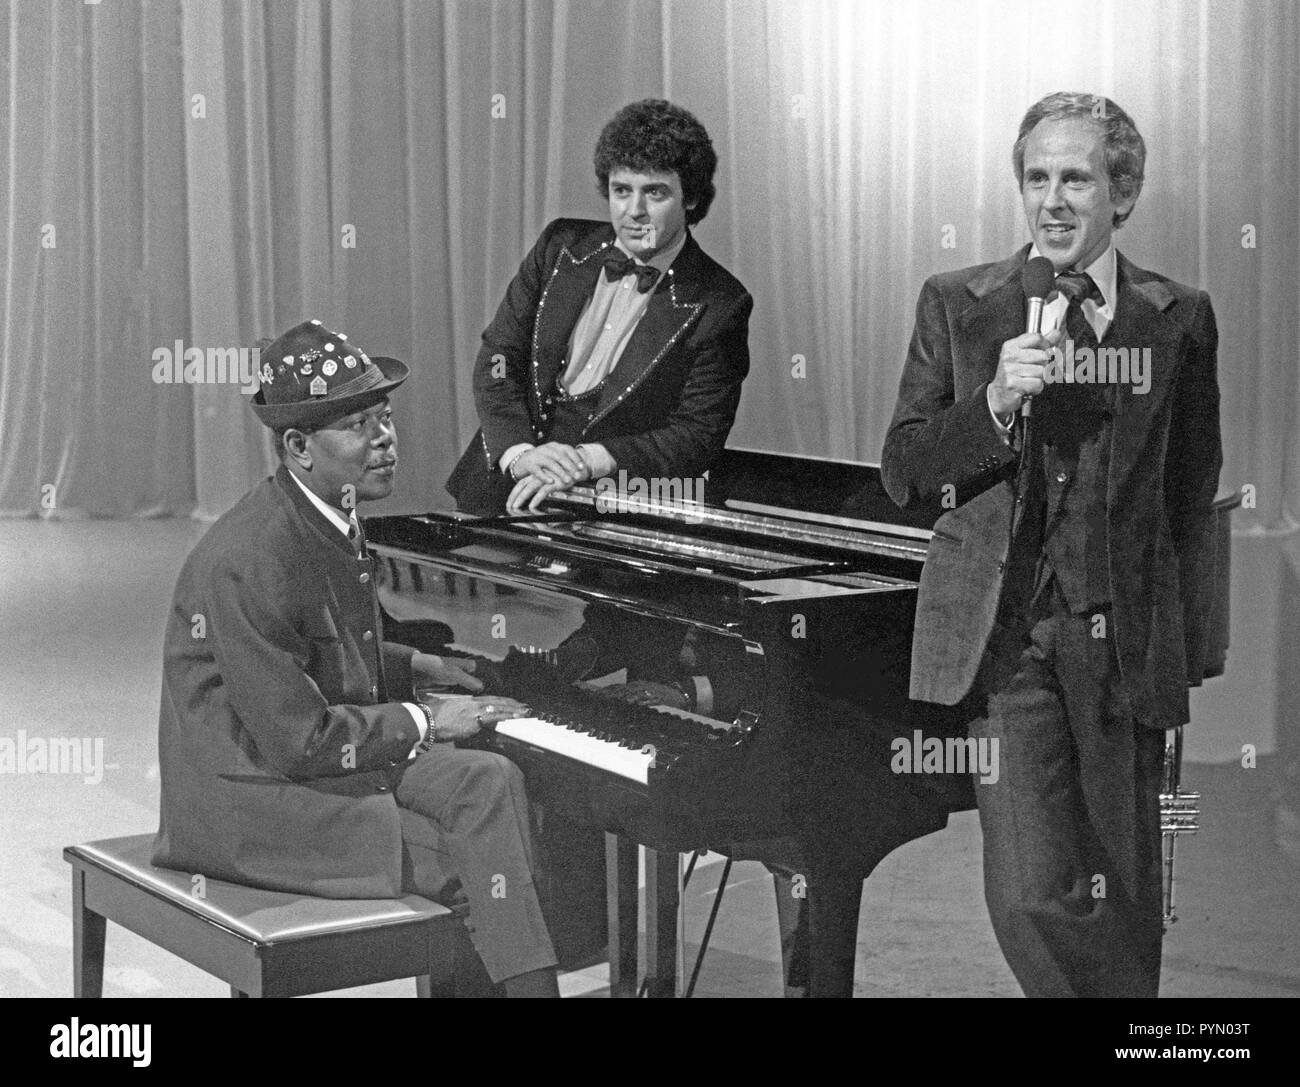 Musik geht um die Welt, Musiksendung, Deutschland 1979 Mitwirkende: (v. l.) Billy Mo, Tony Marshall, Gerd Vespermann Stockfoto